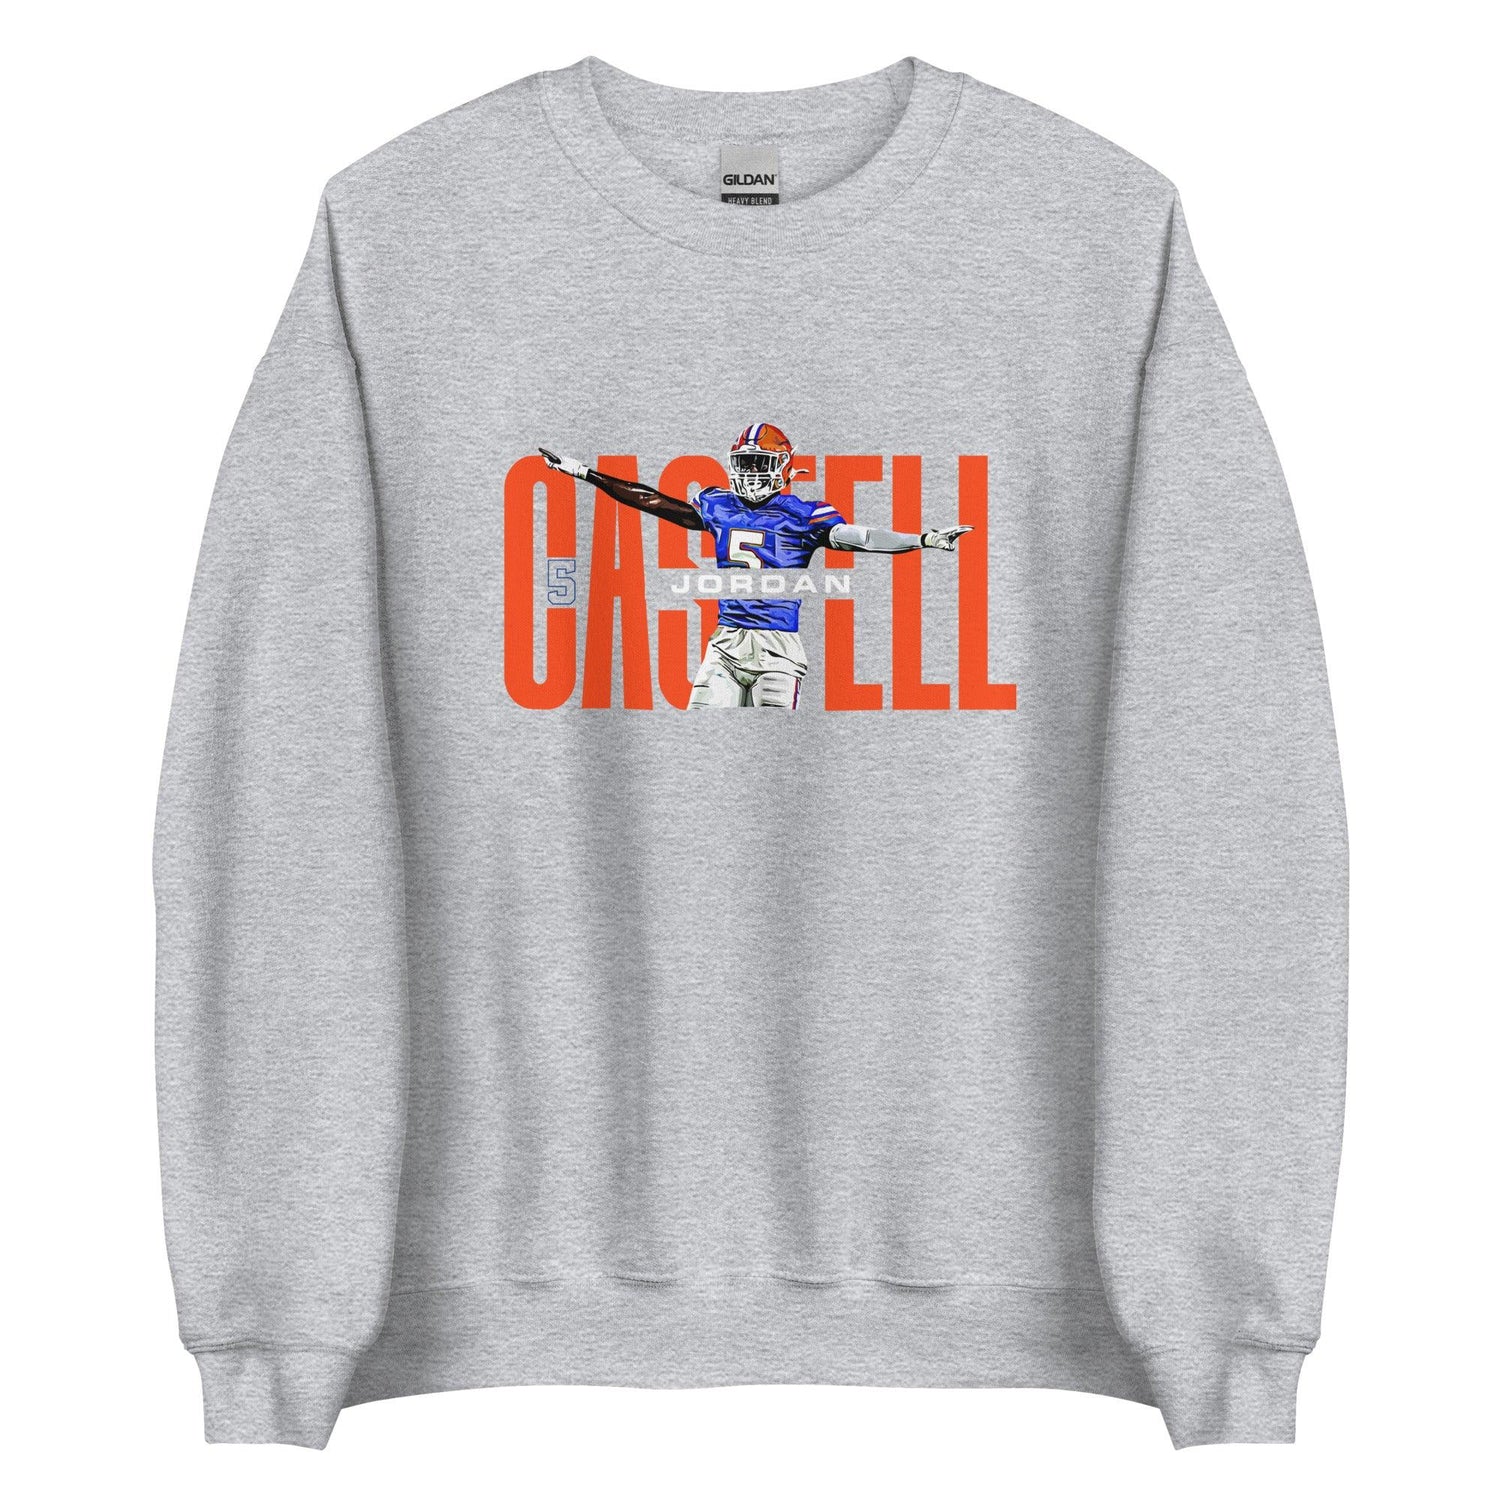 Jordan Castell "Gameday" Sweatshirt - Fan Arch